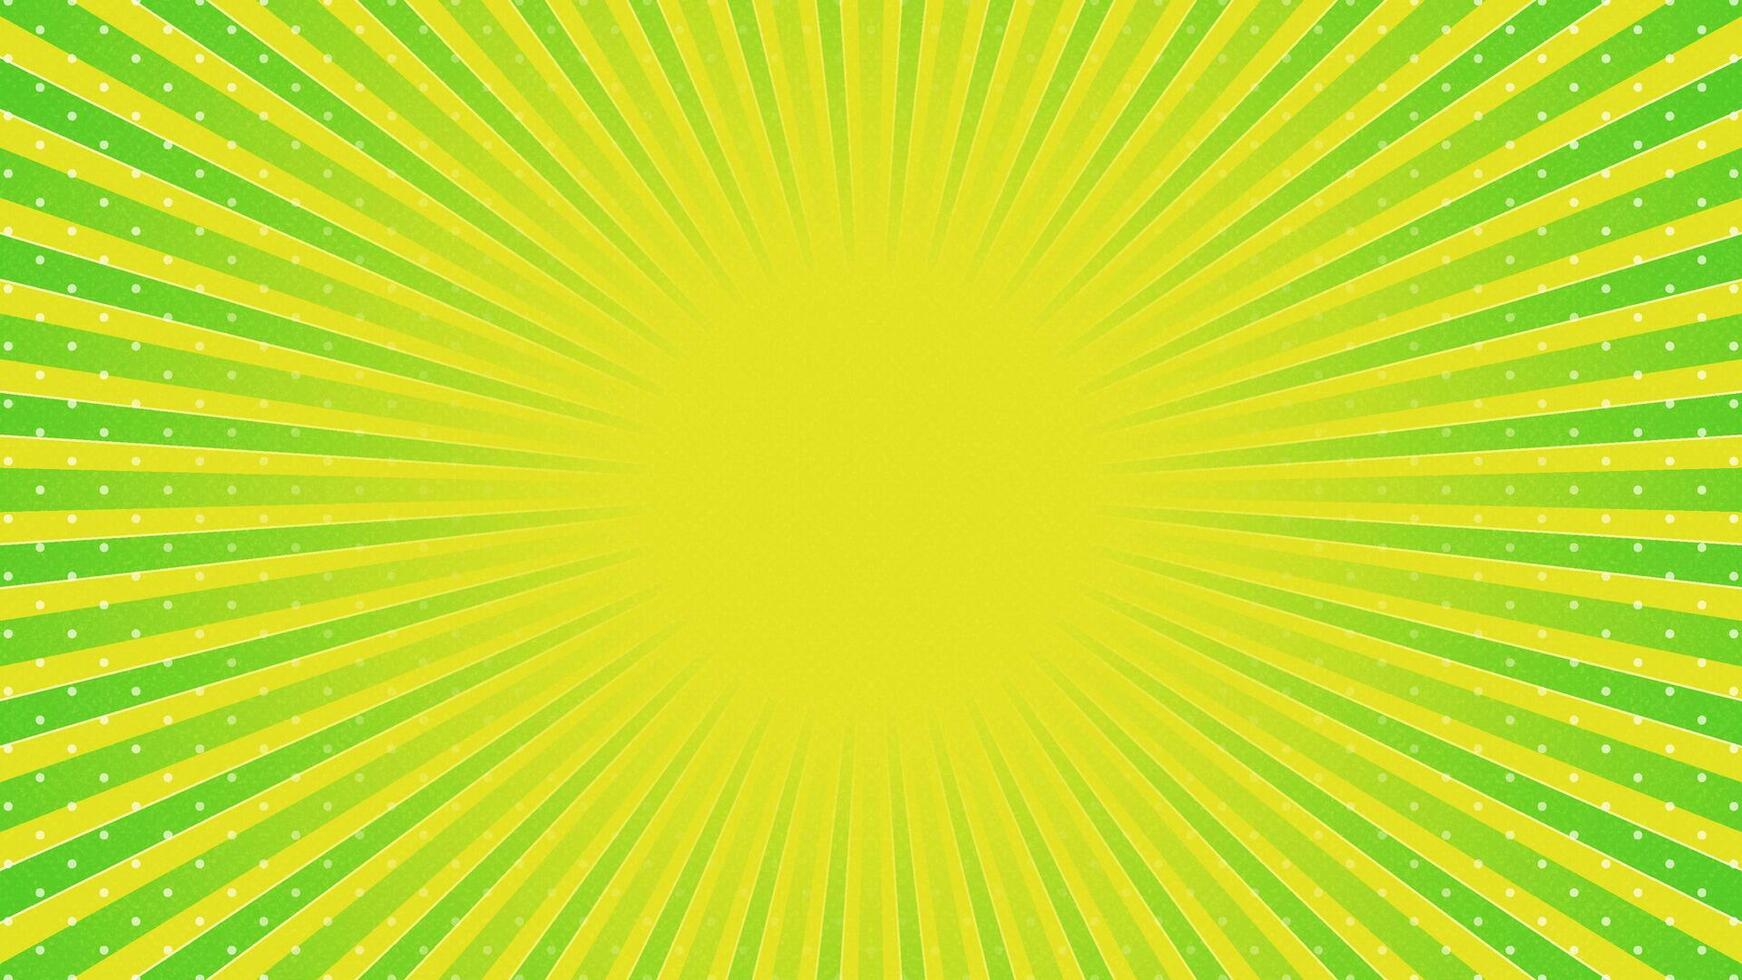 Grün mit Gelb Sonne Strahlen retro mit Papier Textur Hintergrund. abstrakt platzen Sonne Strahlen Muster Design. Vektor Illustration.